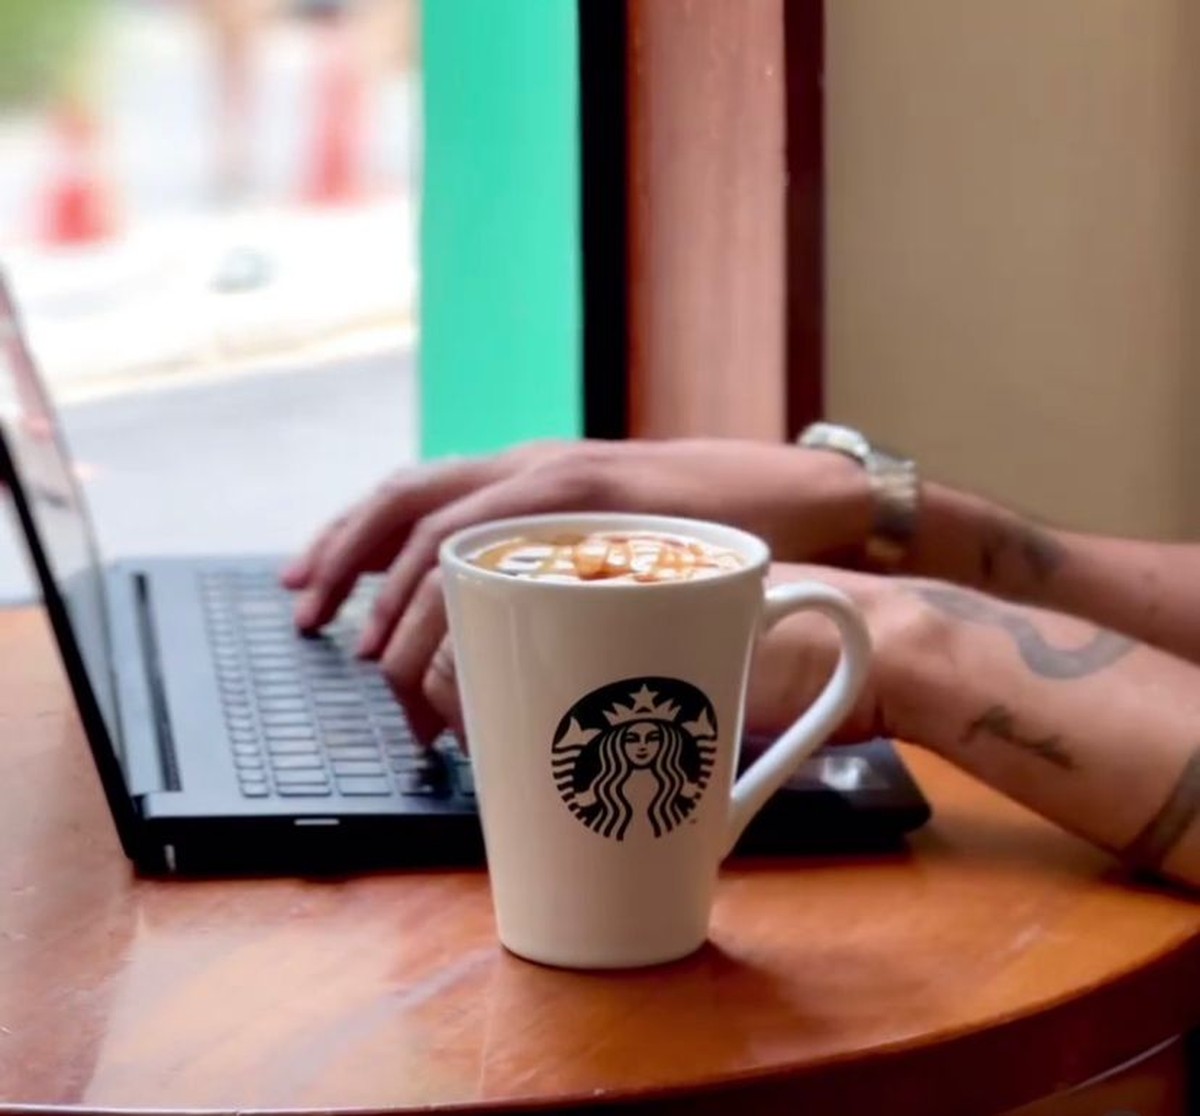 SouthRock busca R$ 100 milhões em DIP enquanto tenta repassar Starbucks